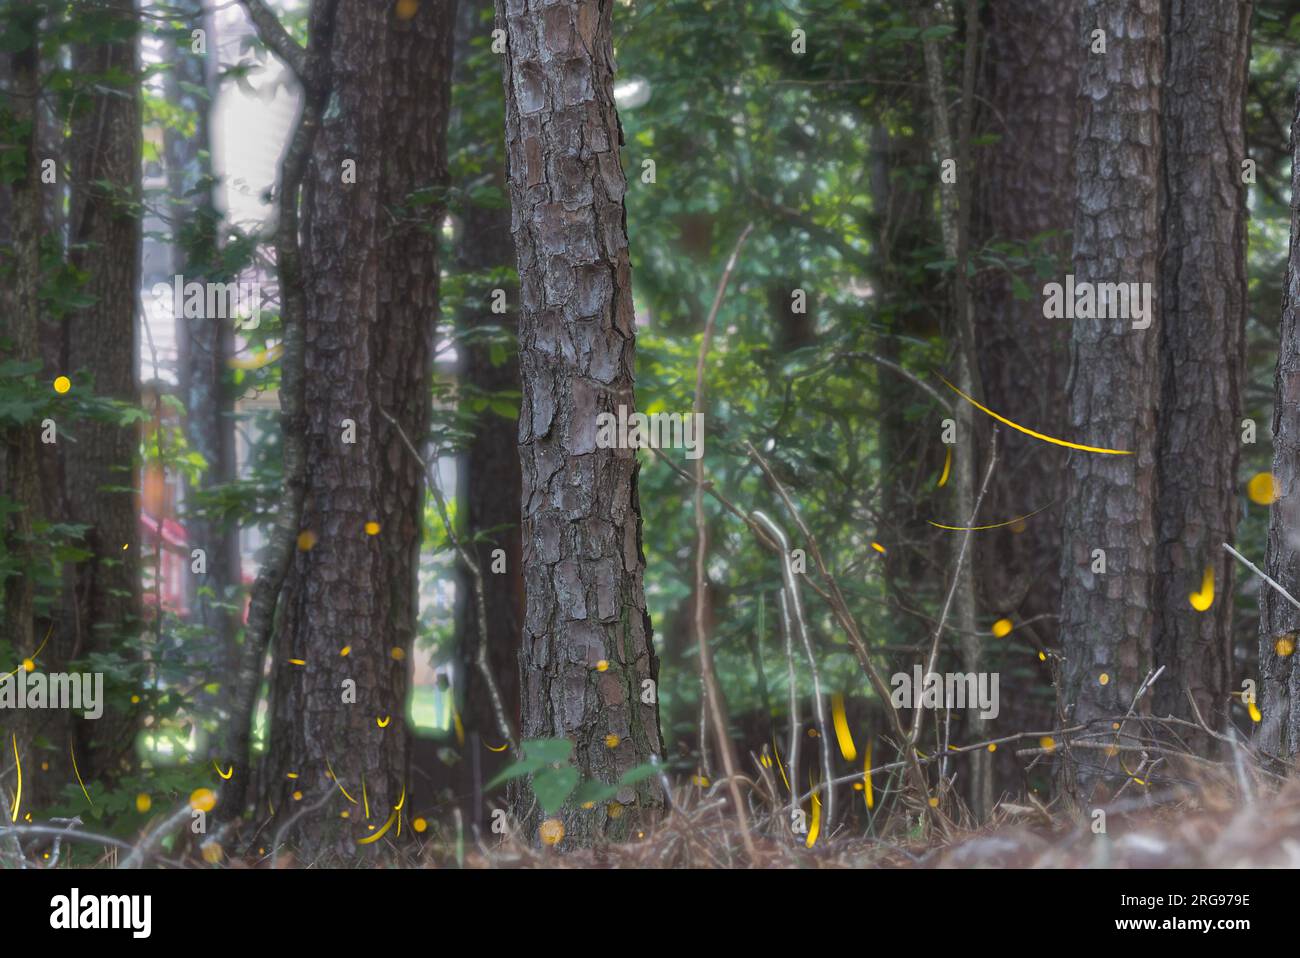 Le composite de plusieurs images empilées ensemble montre de nombreuses lucioles floutant le mouvement et émettant des traînées de lumière jaune. Banque D'Images